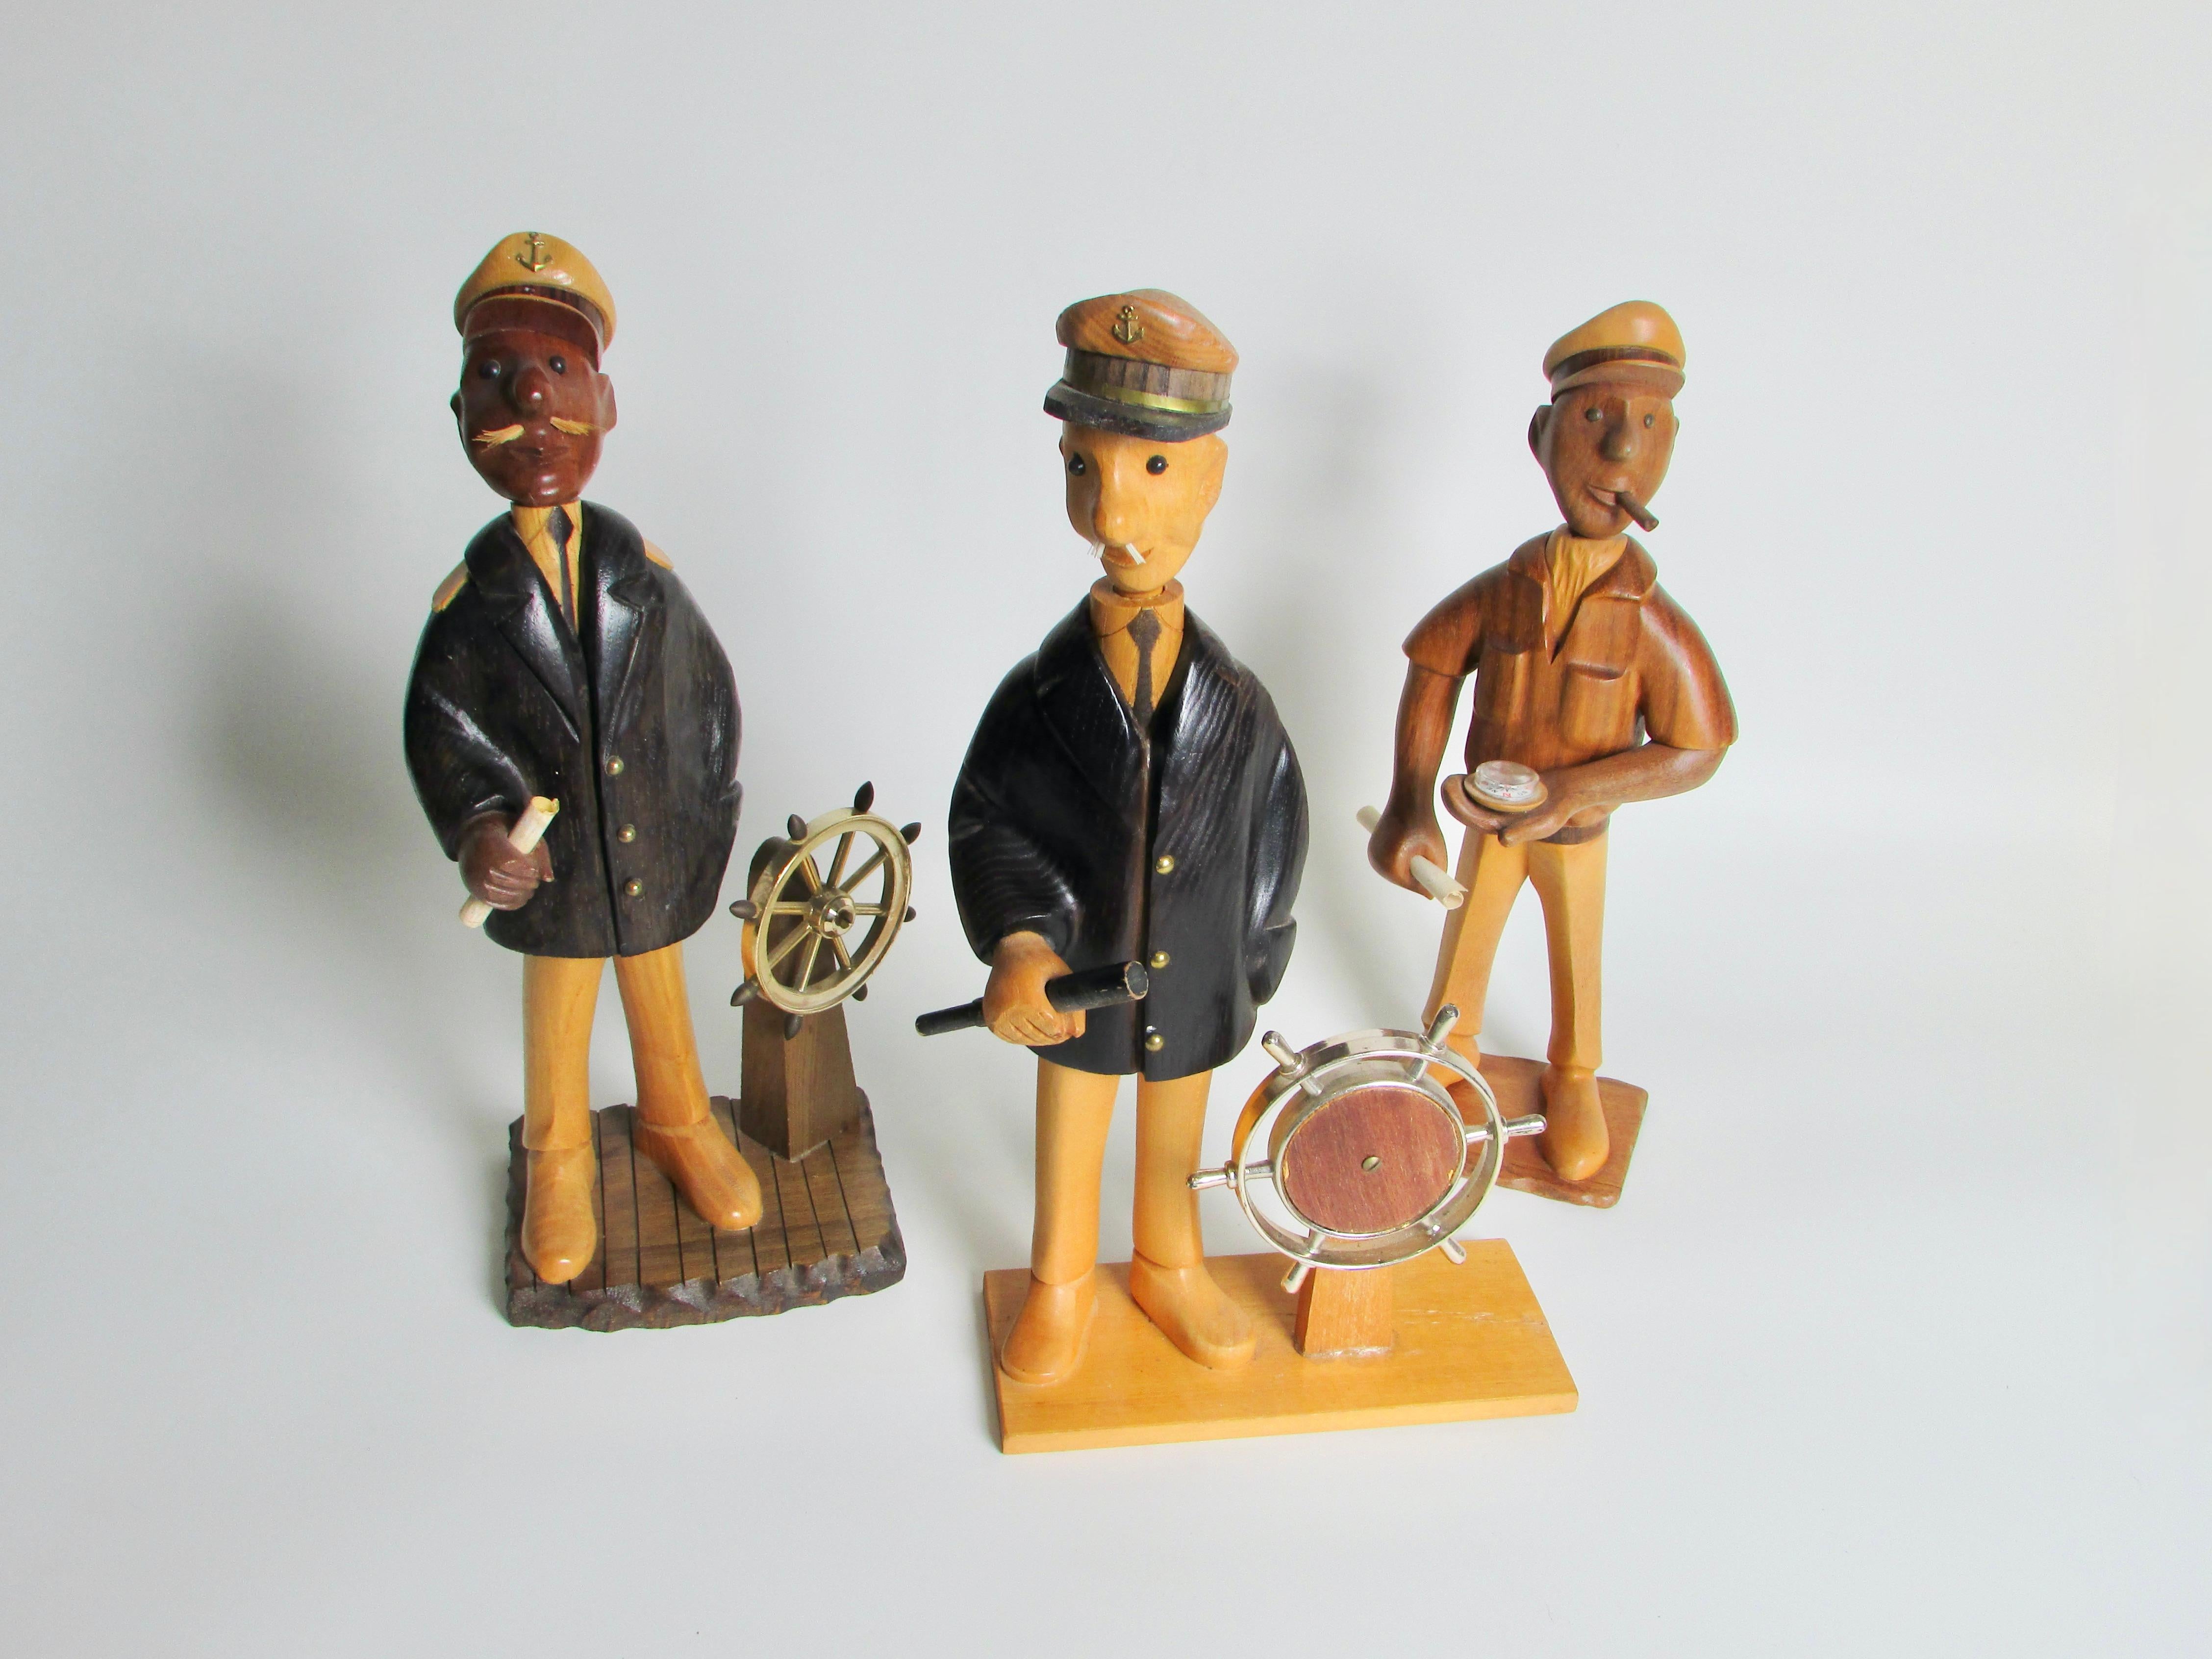 wooden sailor figurines